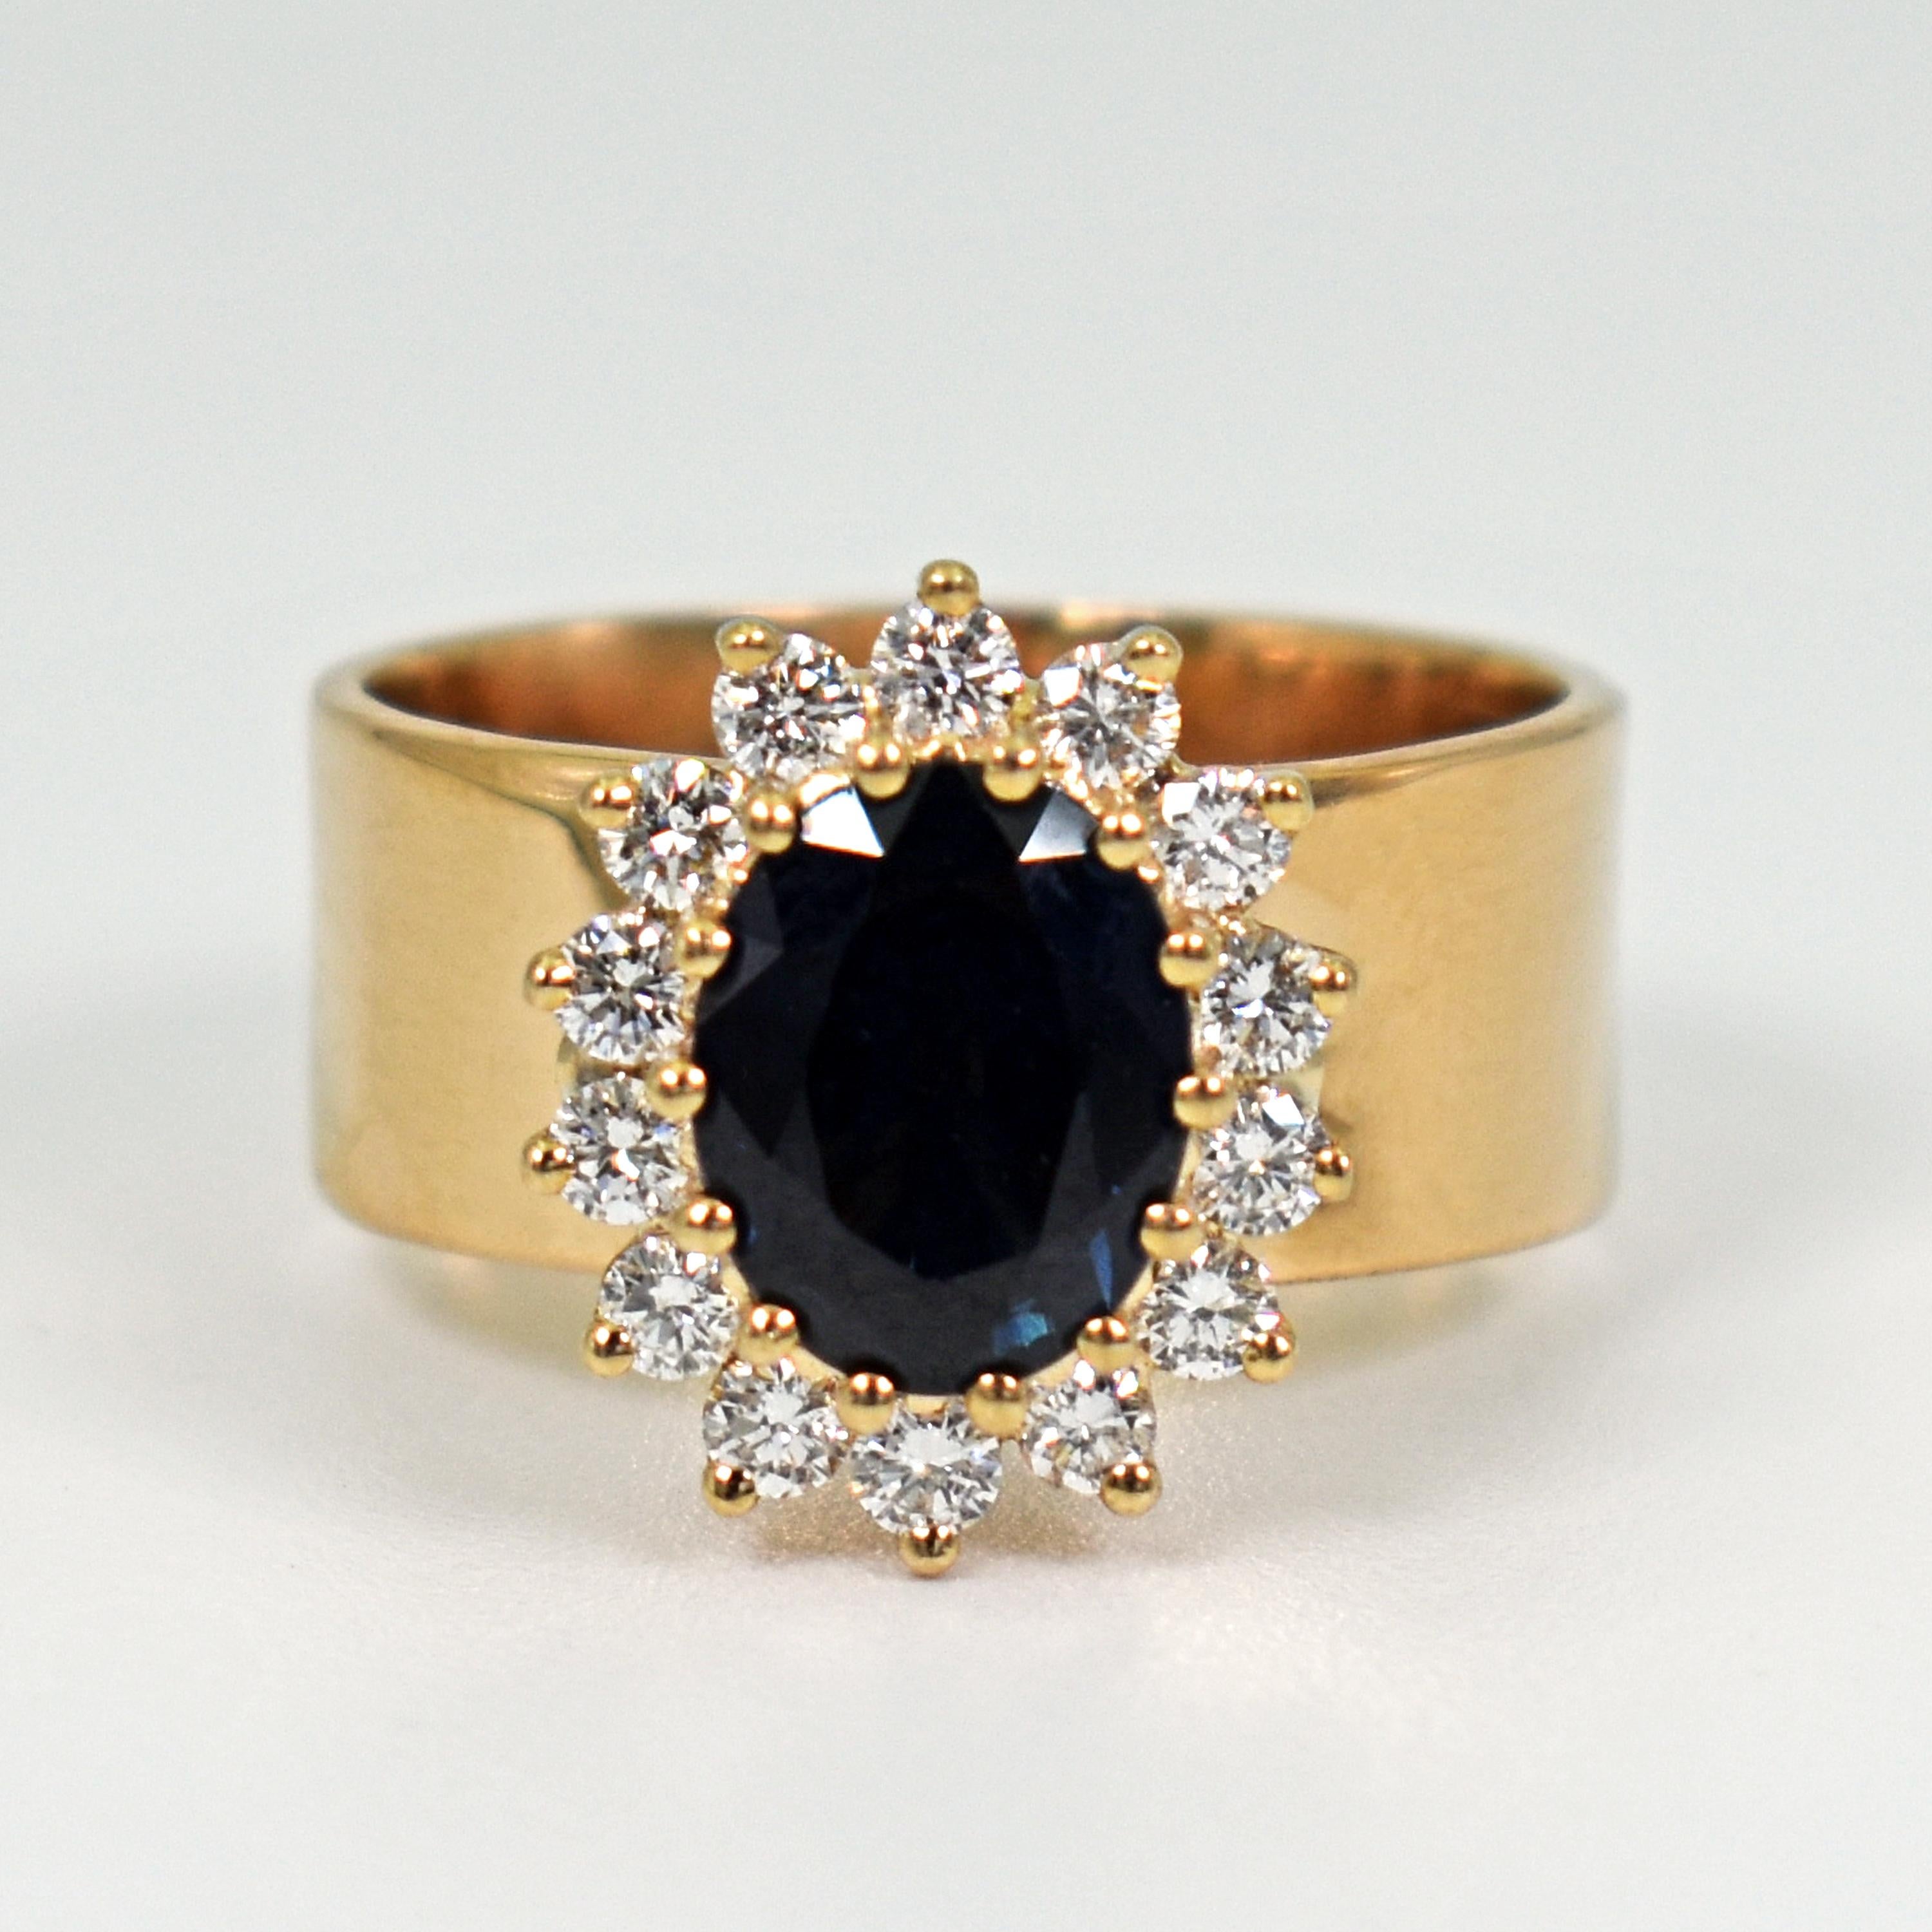 Saphir bleu ovale de 1,76 carat et halo de diamants blancs (0,42 cttw, G-H, SI1) en or jaune 14k serti sur un anneau en or jaune 18k. La bague est actuellement de taille US 6.5 et peut être redimensionnée. La bande de l'anneau fait 7 mm de large.